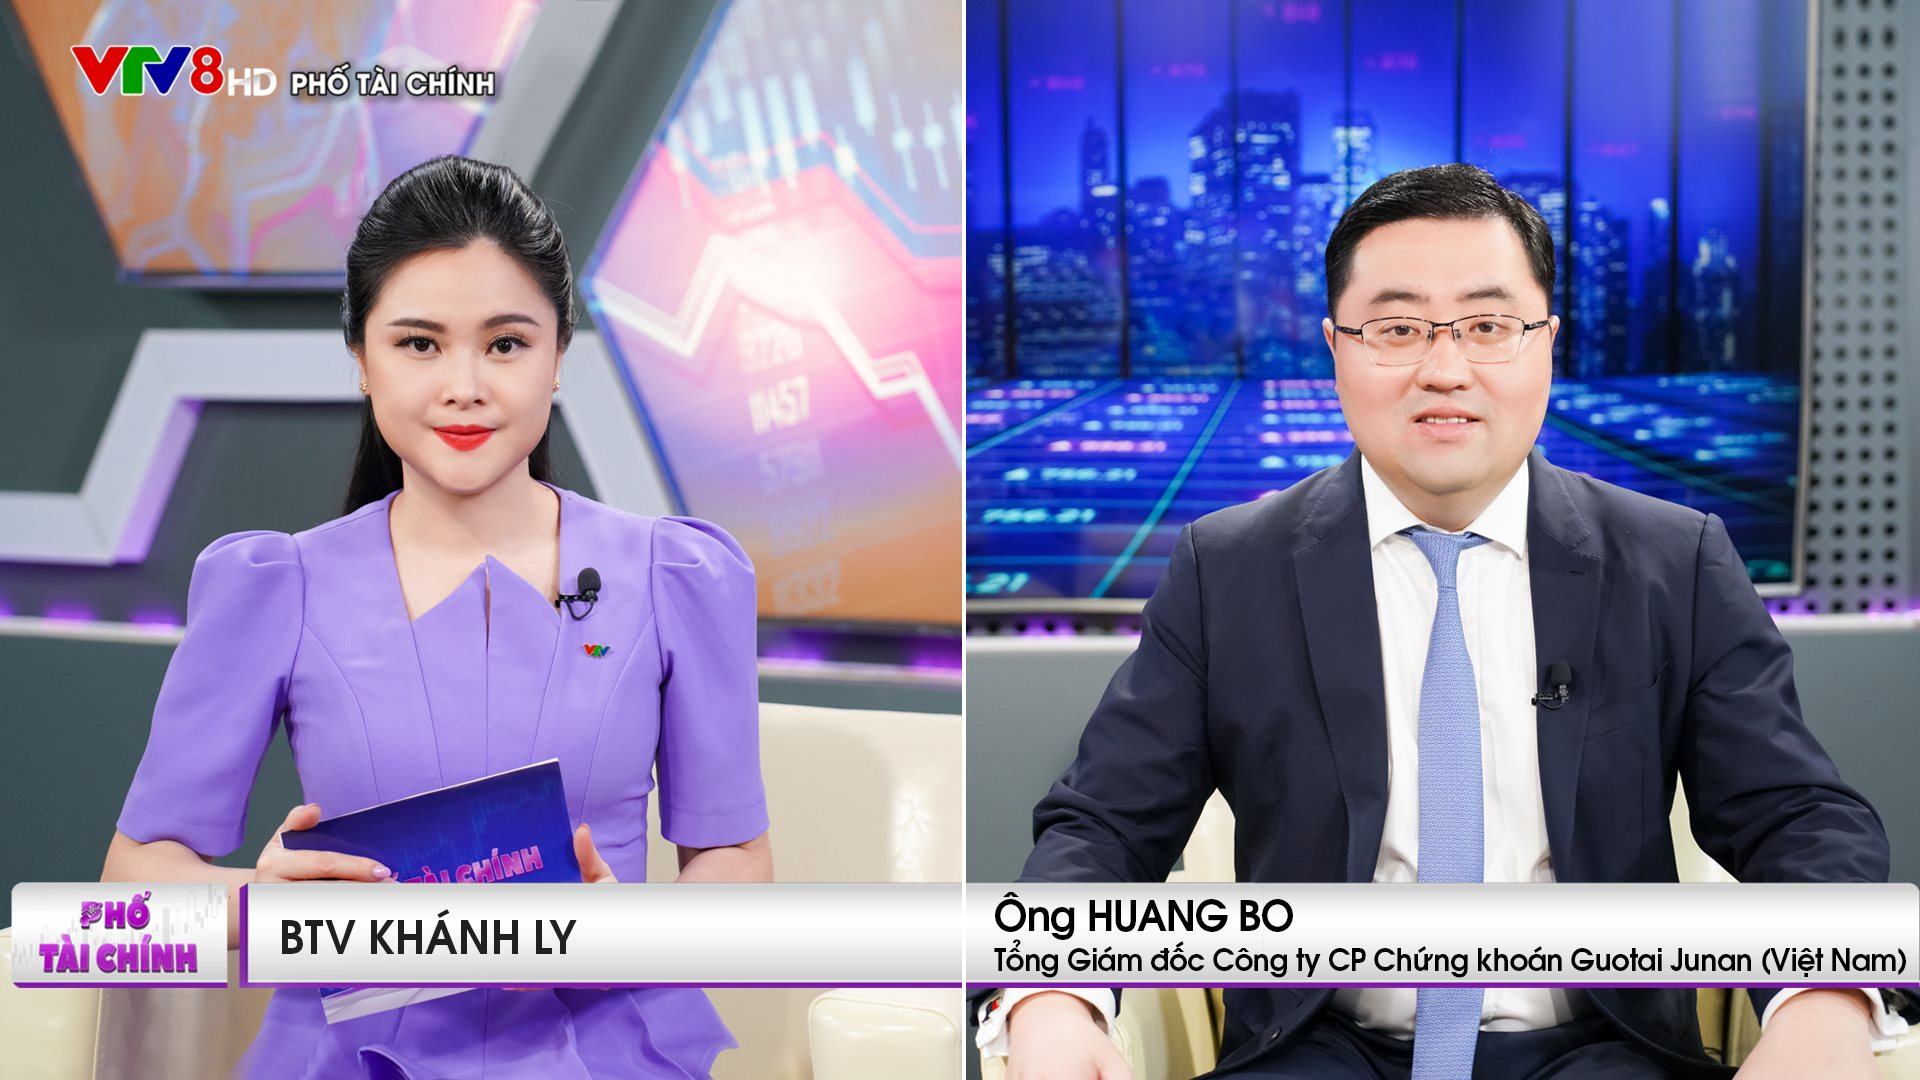 CEO Chứng khoán Guotai Junan: Kết quả kinh doanh nhiều công ty trên thị trường chứng khoán Việt Nam sẽ tăng mạnh - Ảnh 3.